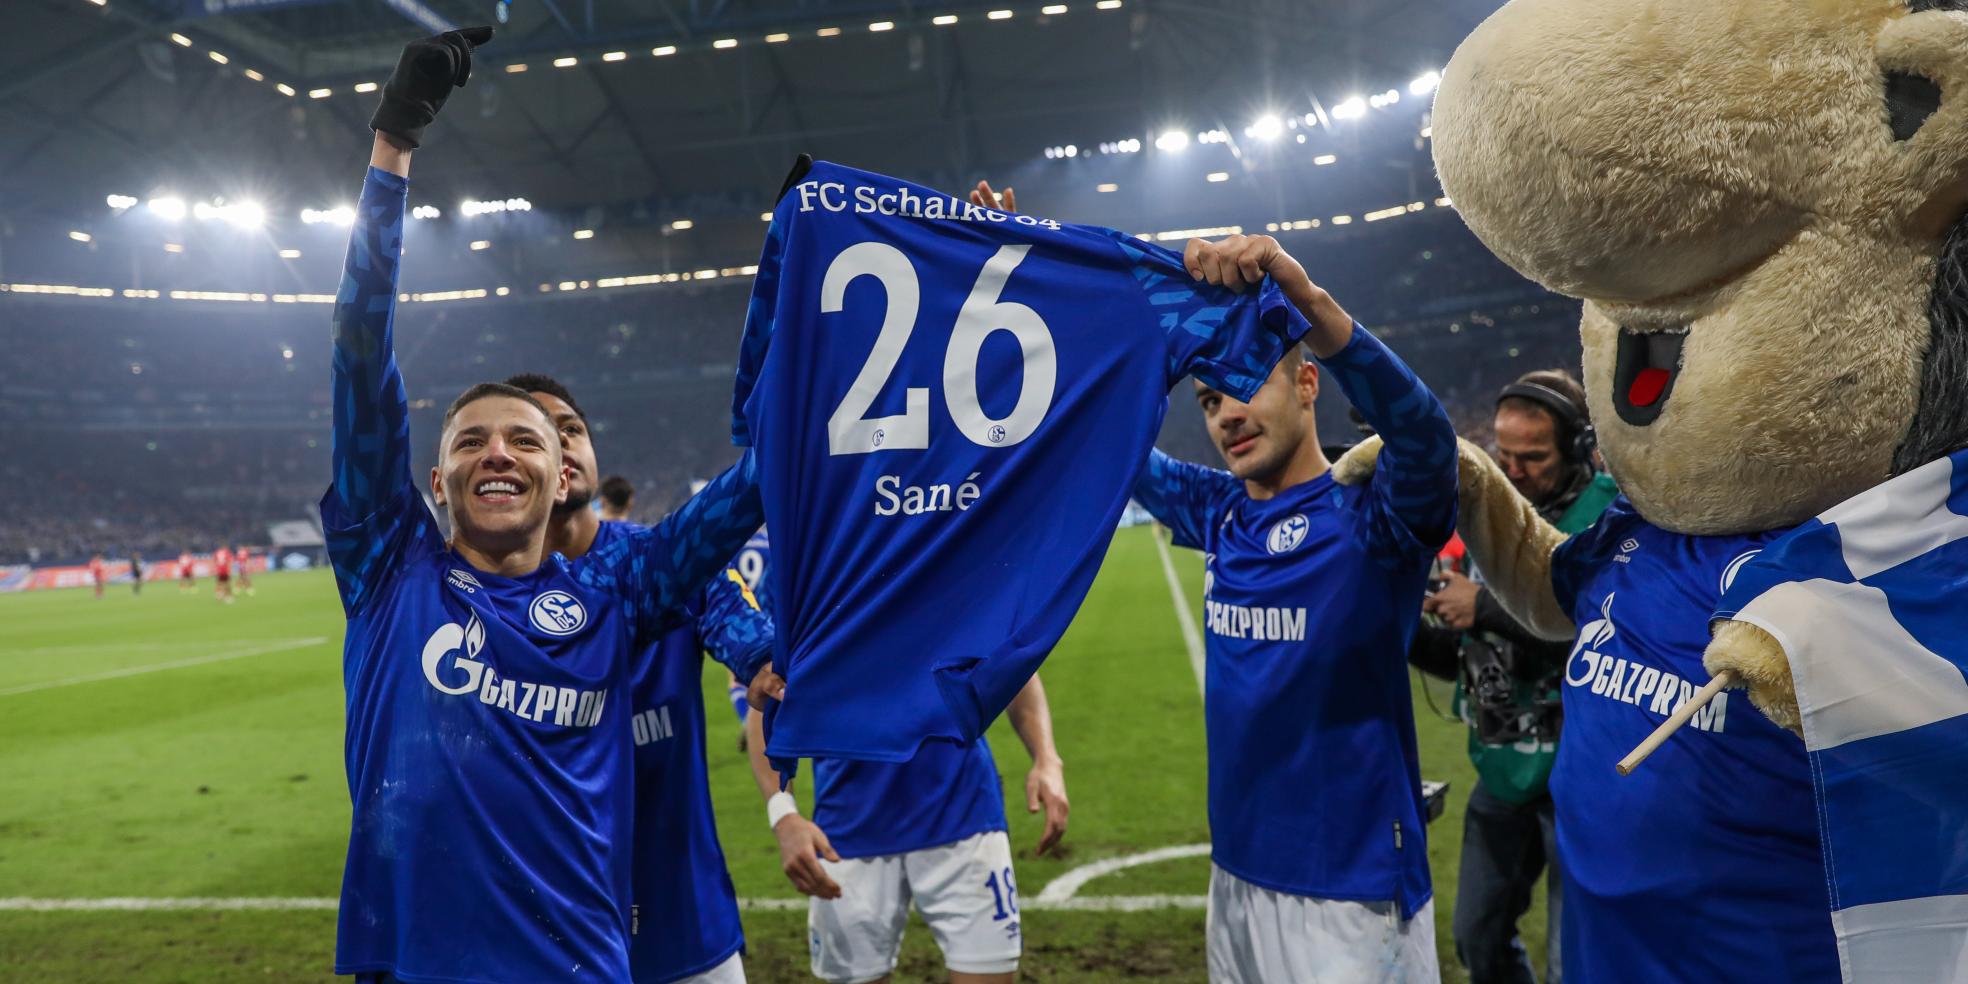 Schalke-Spieler mit dem Trikot von Salif Sane